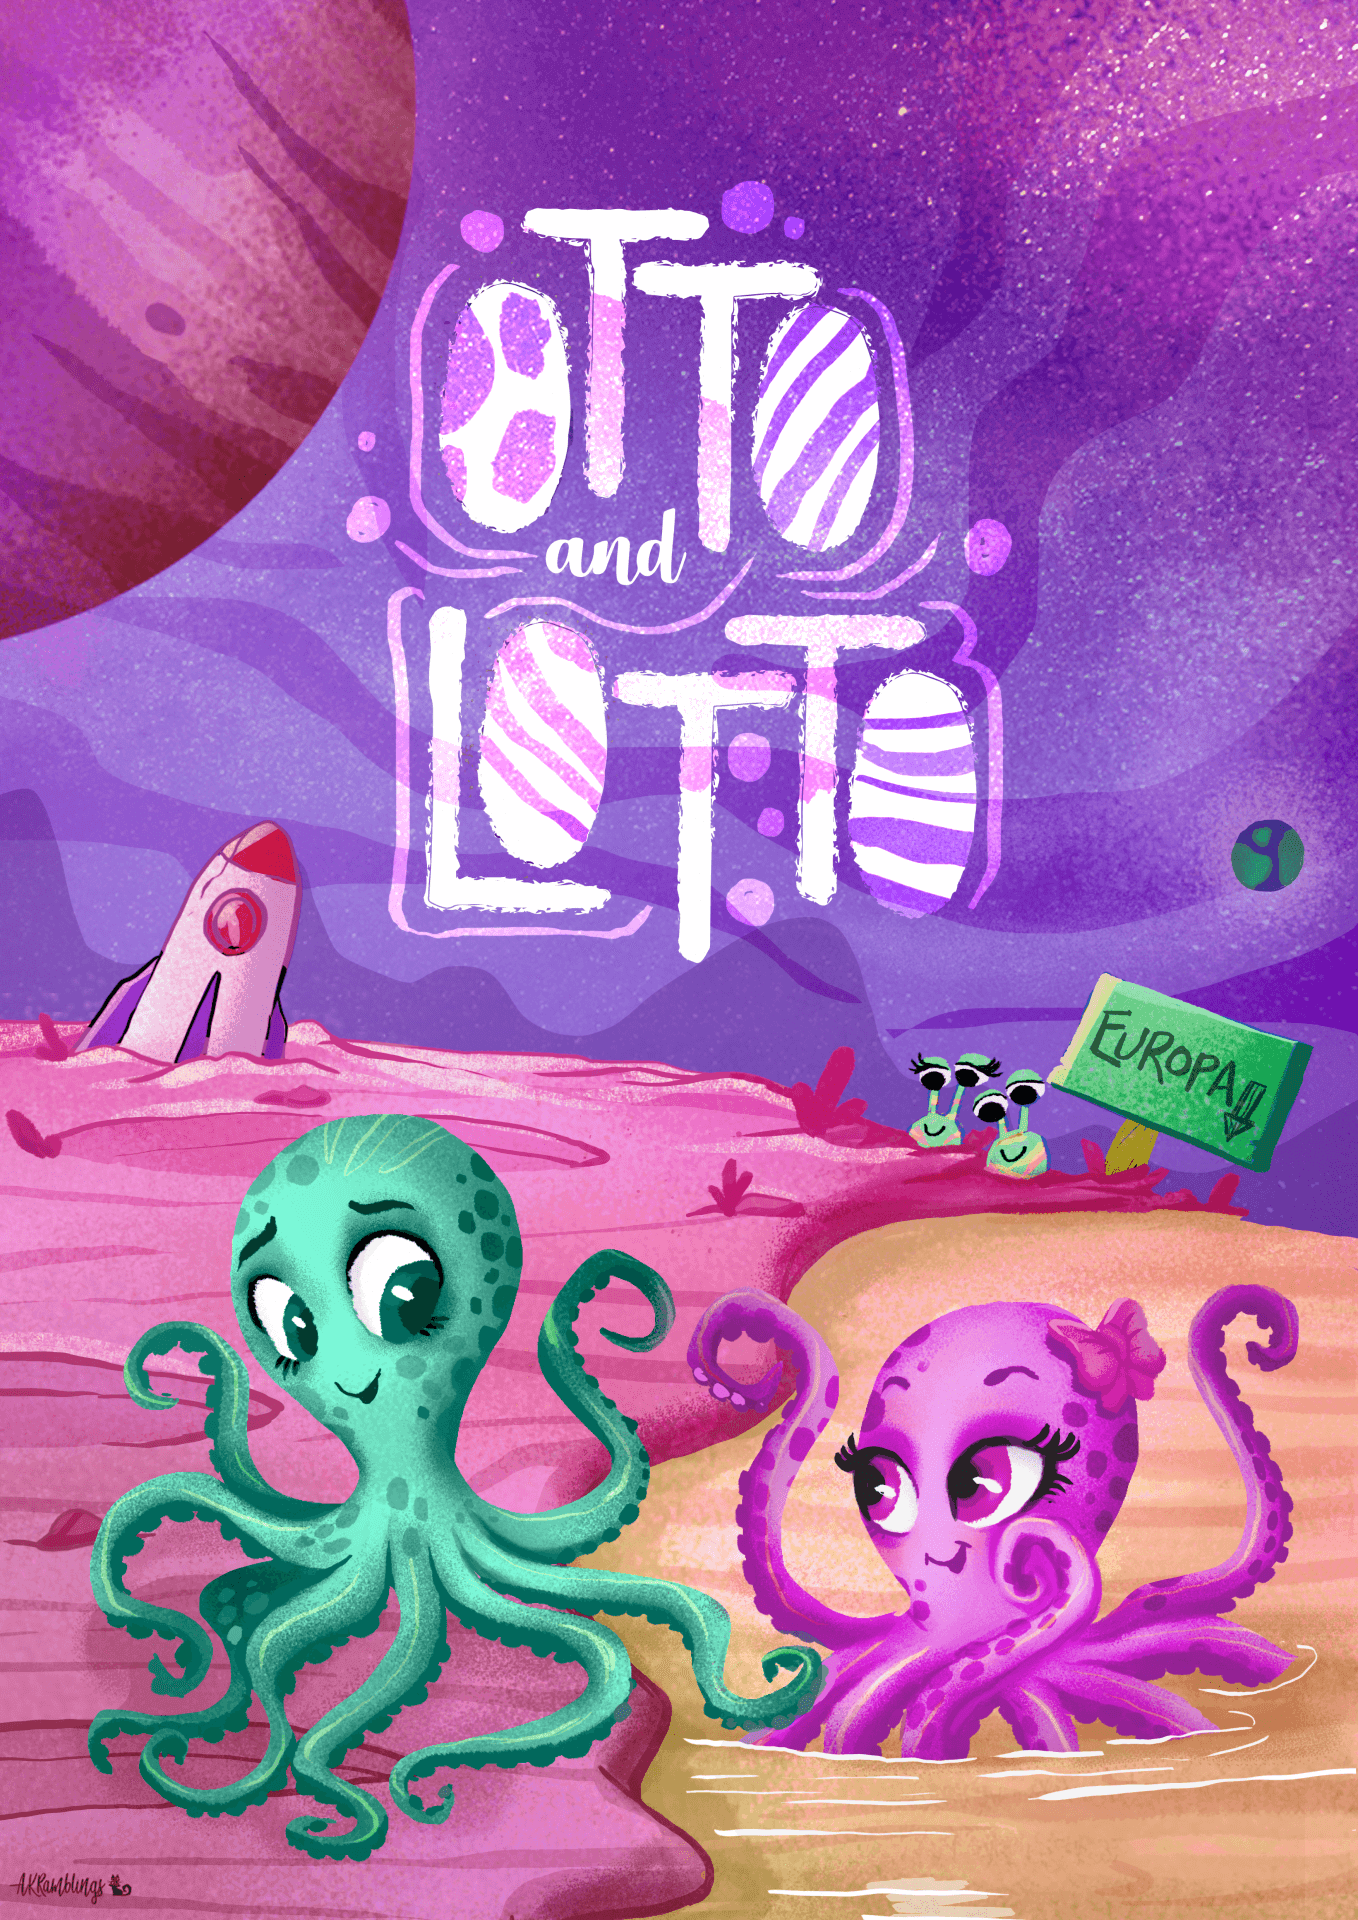 Otto & Lotto